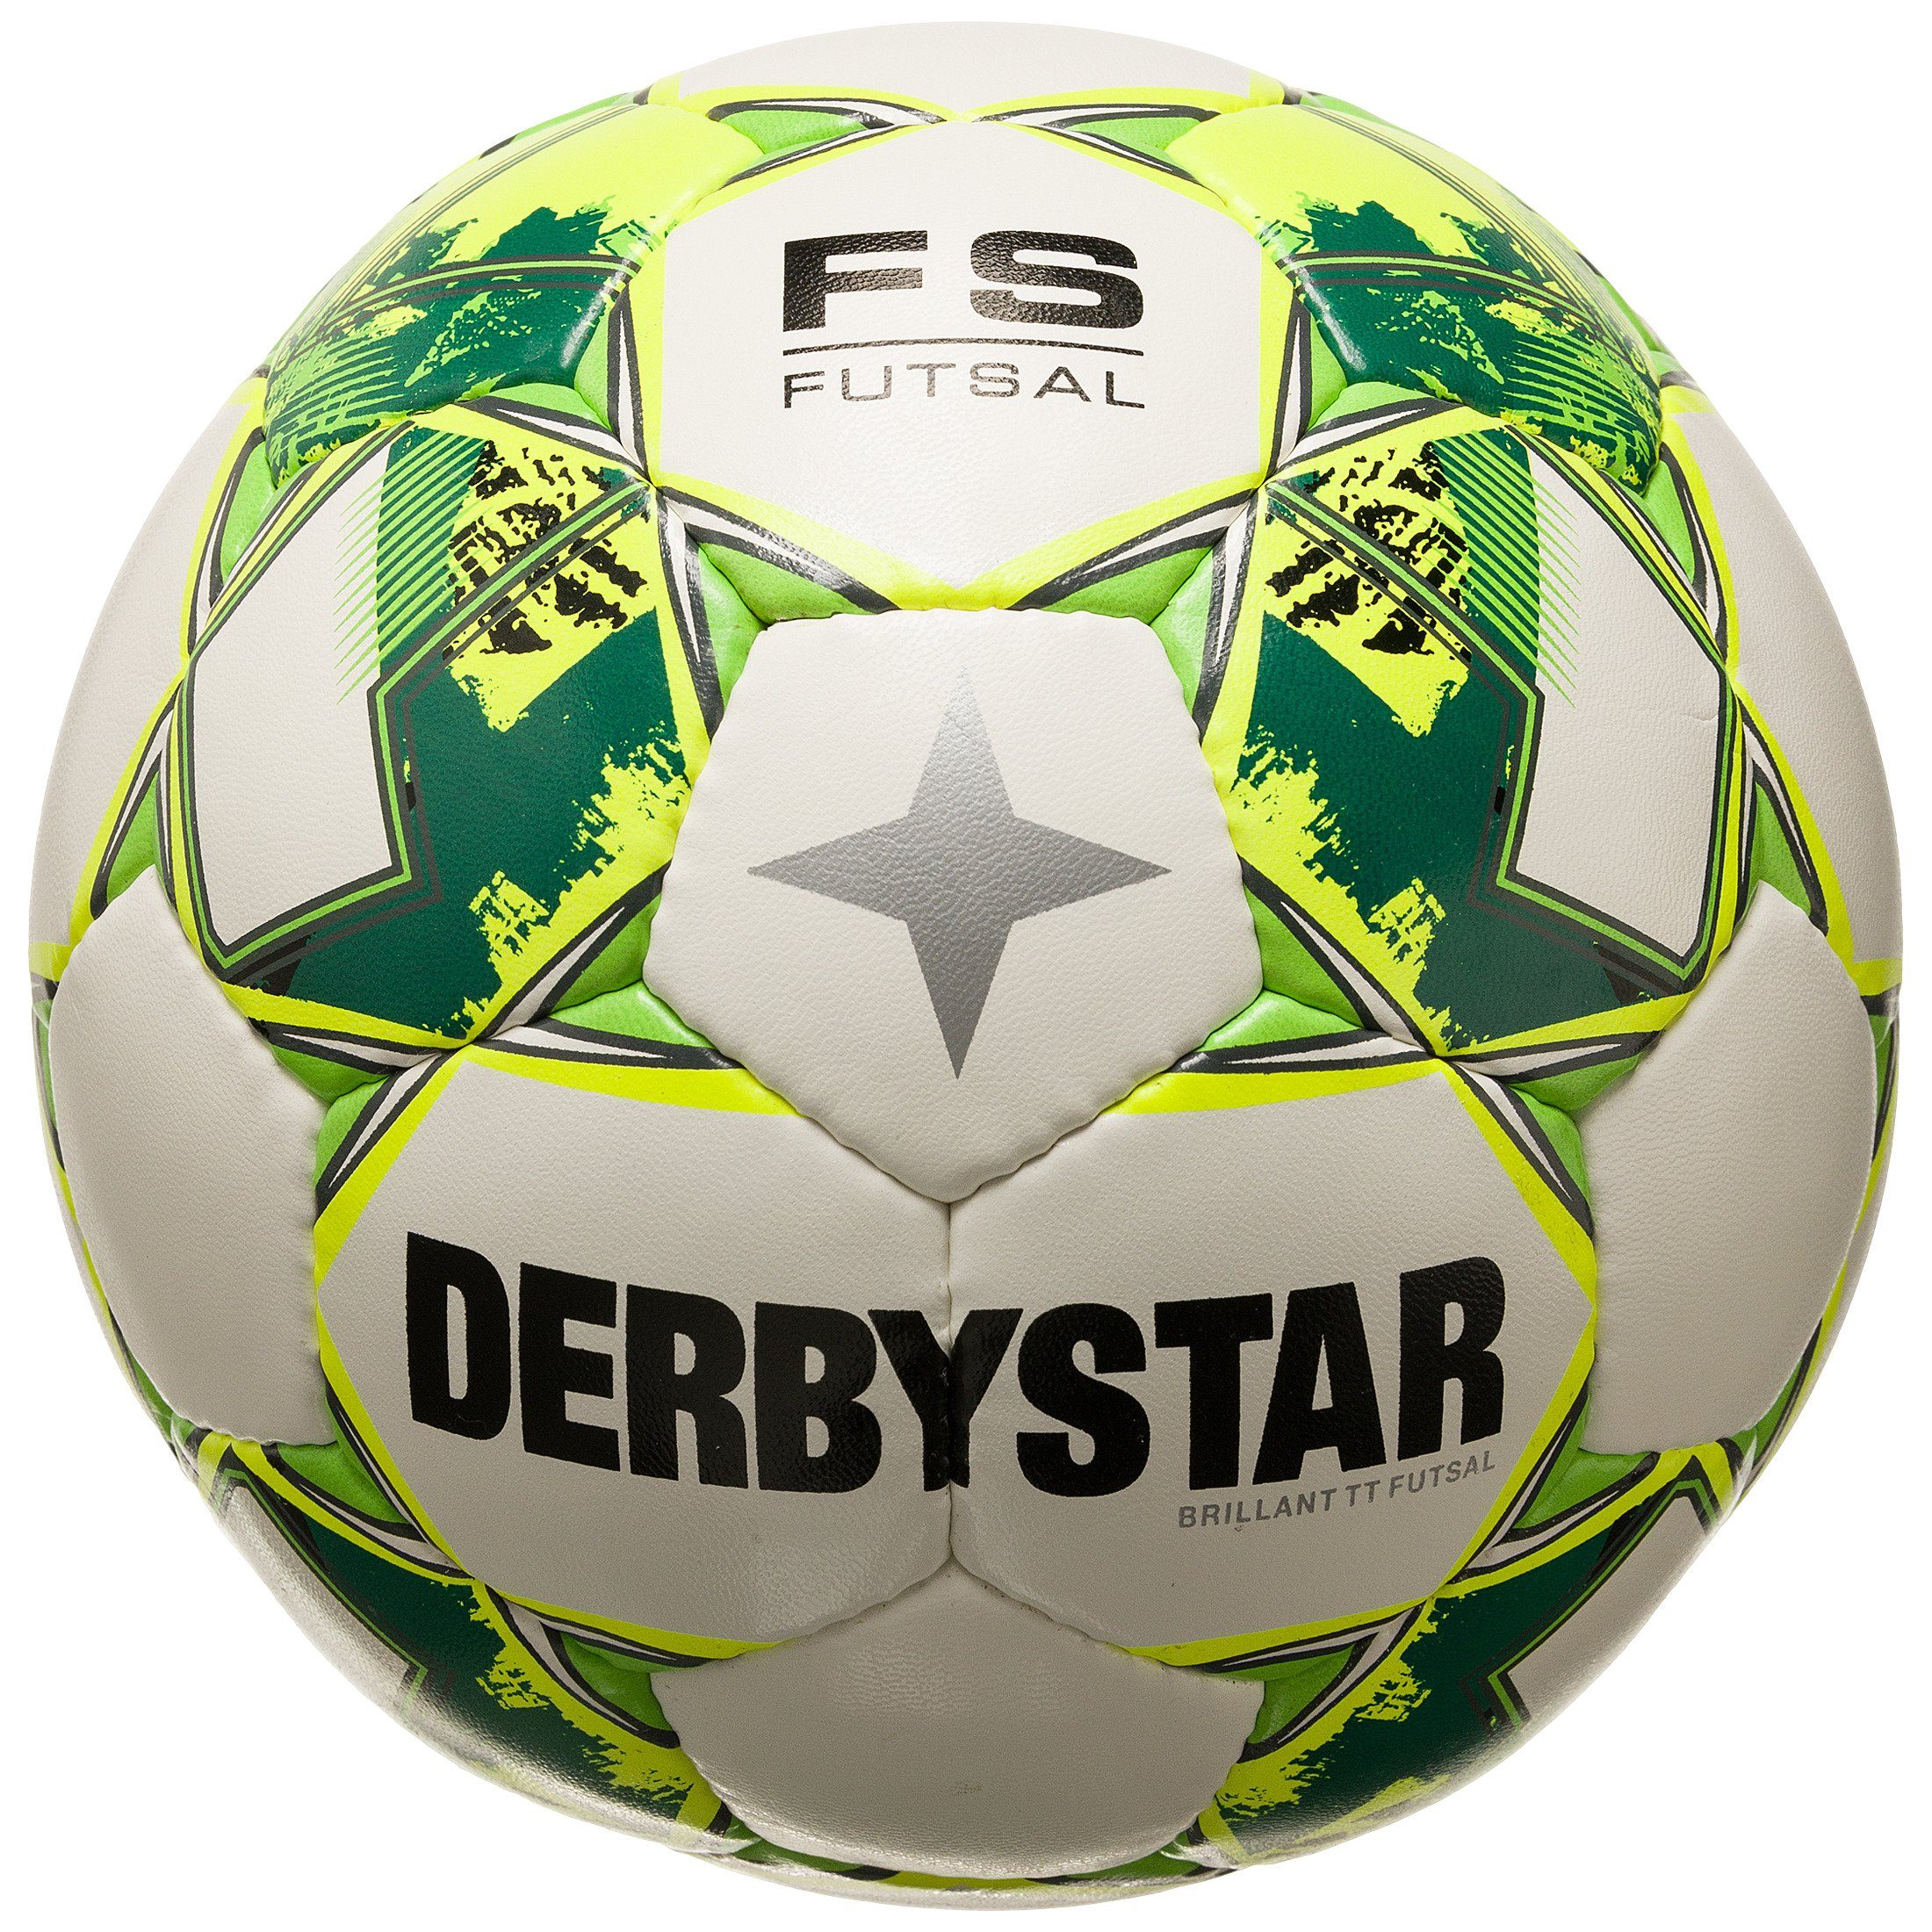 Derbystar Fußball Brillant High-Visibility-Farben TT Fußball, v23 Sichtbarkeit für